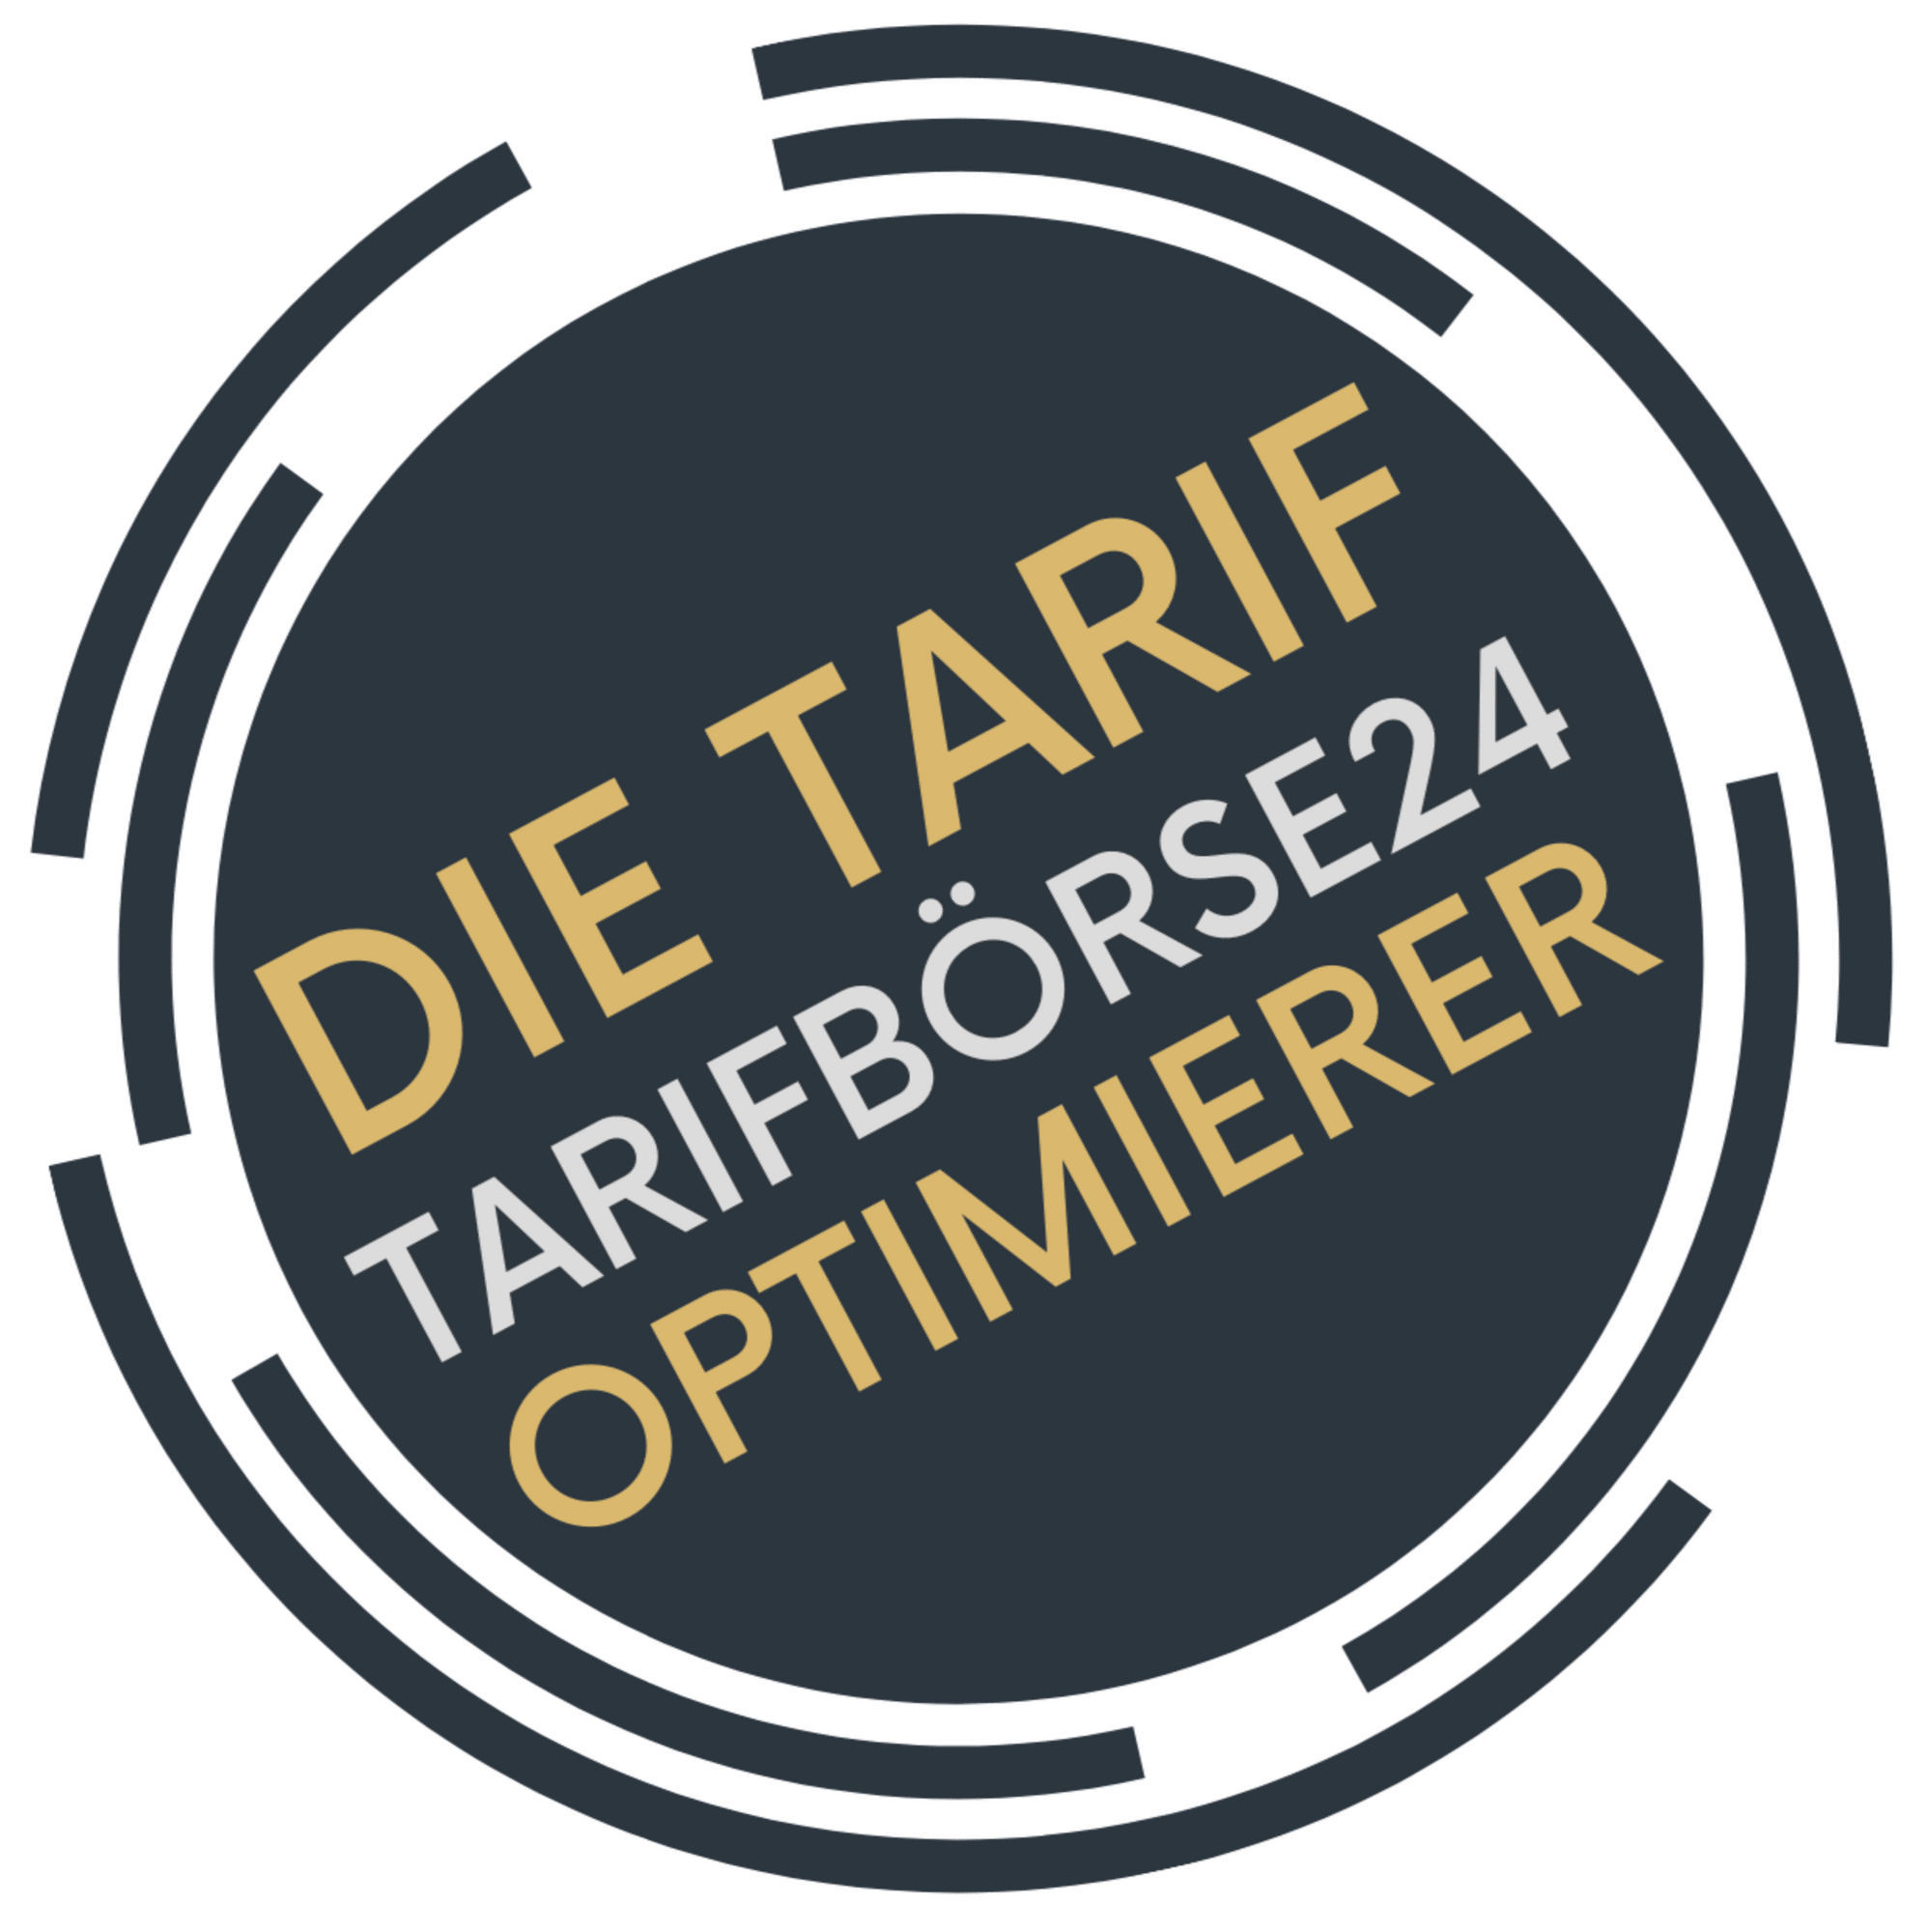 Tarifbörse24  Tarifoptimierung Strom und Gas, Edigheimer Straße 43 in Ludwigshafen Am Rhein